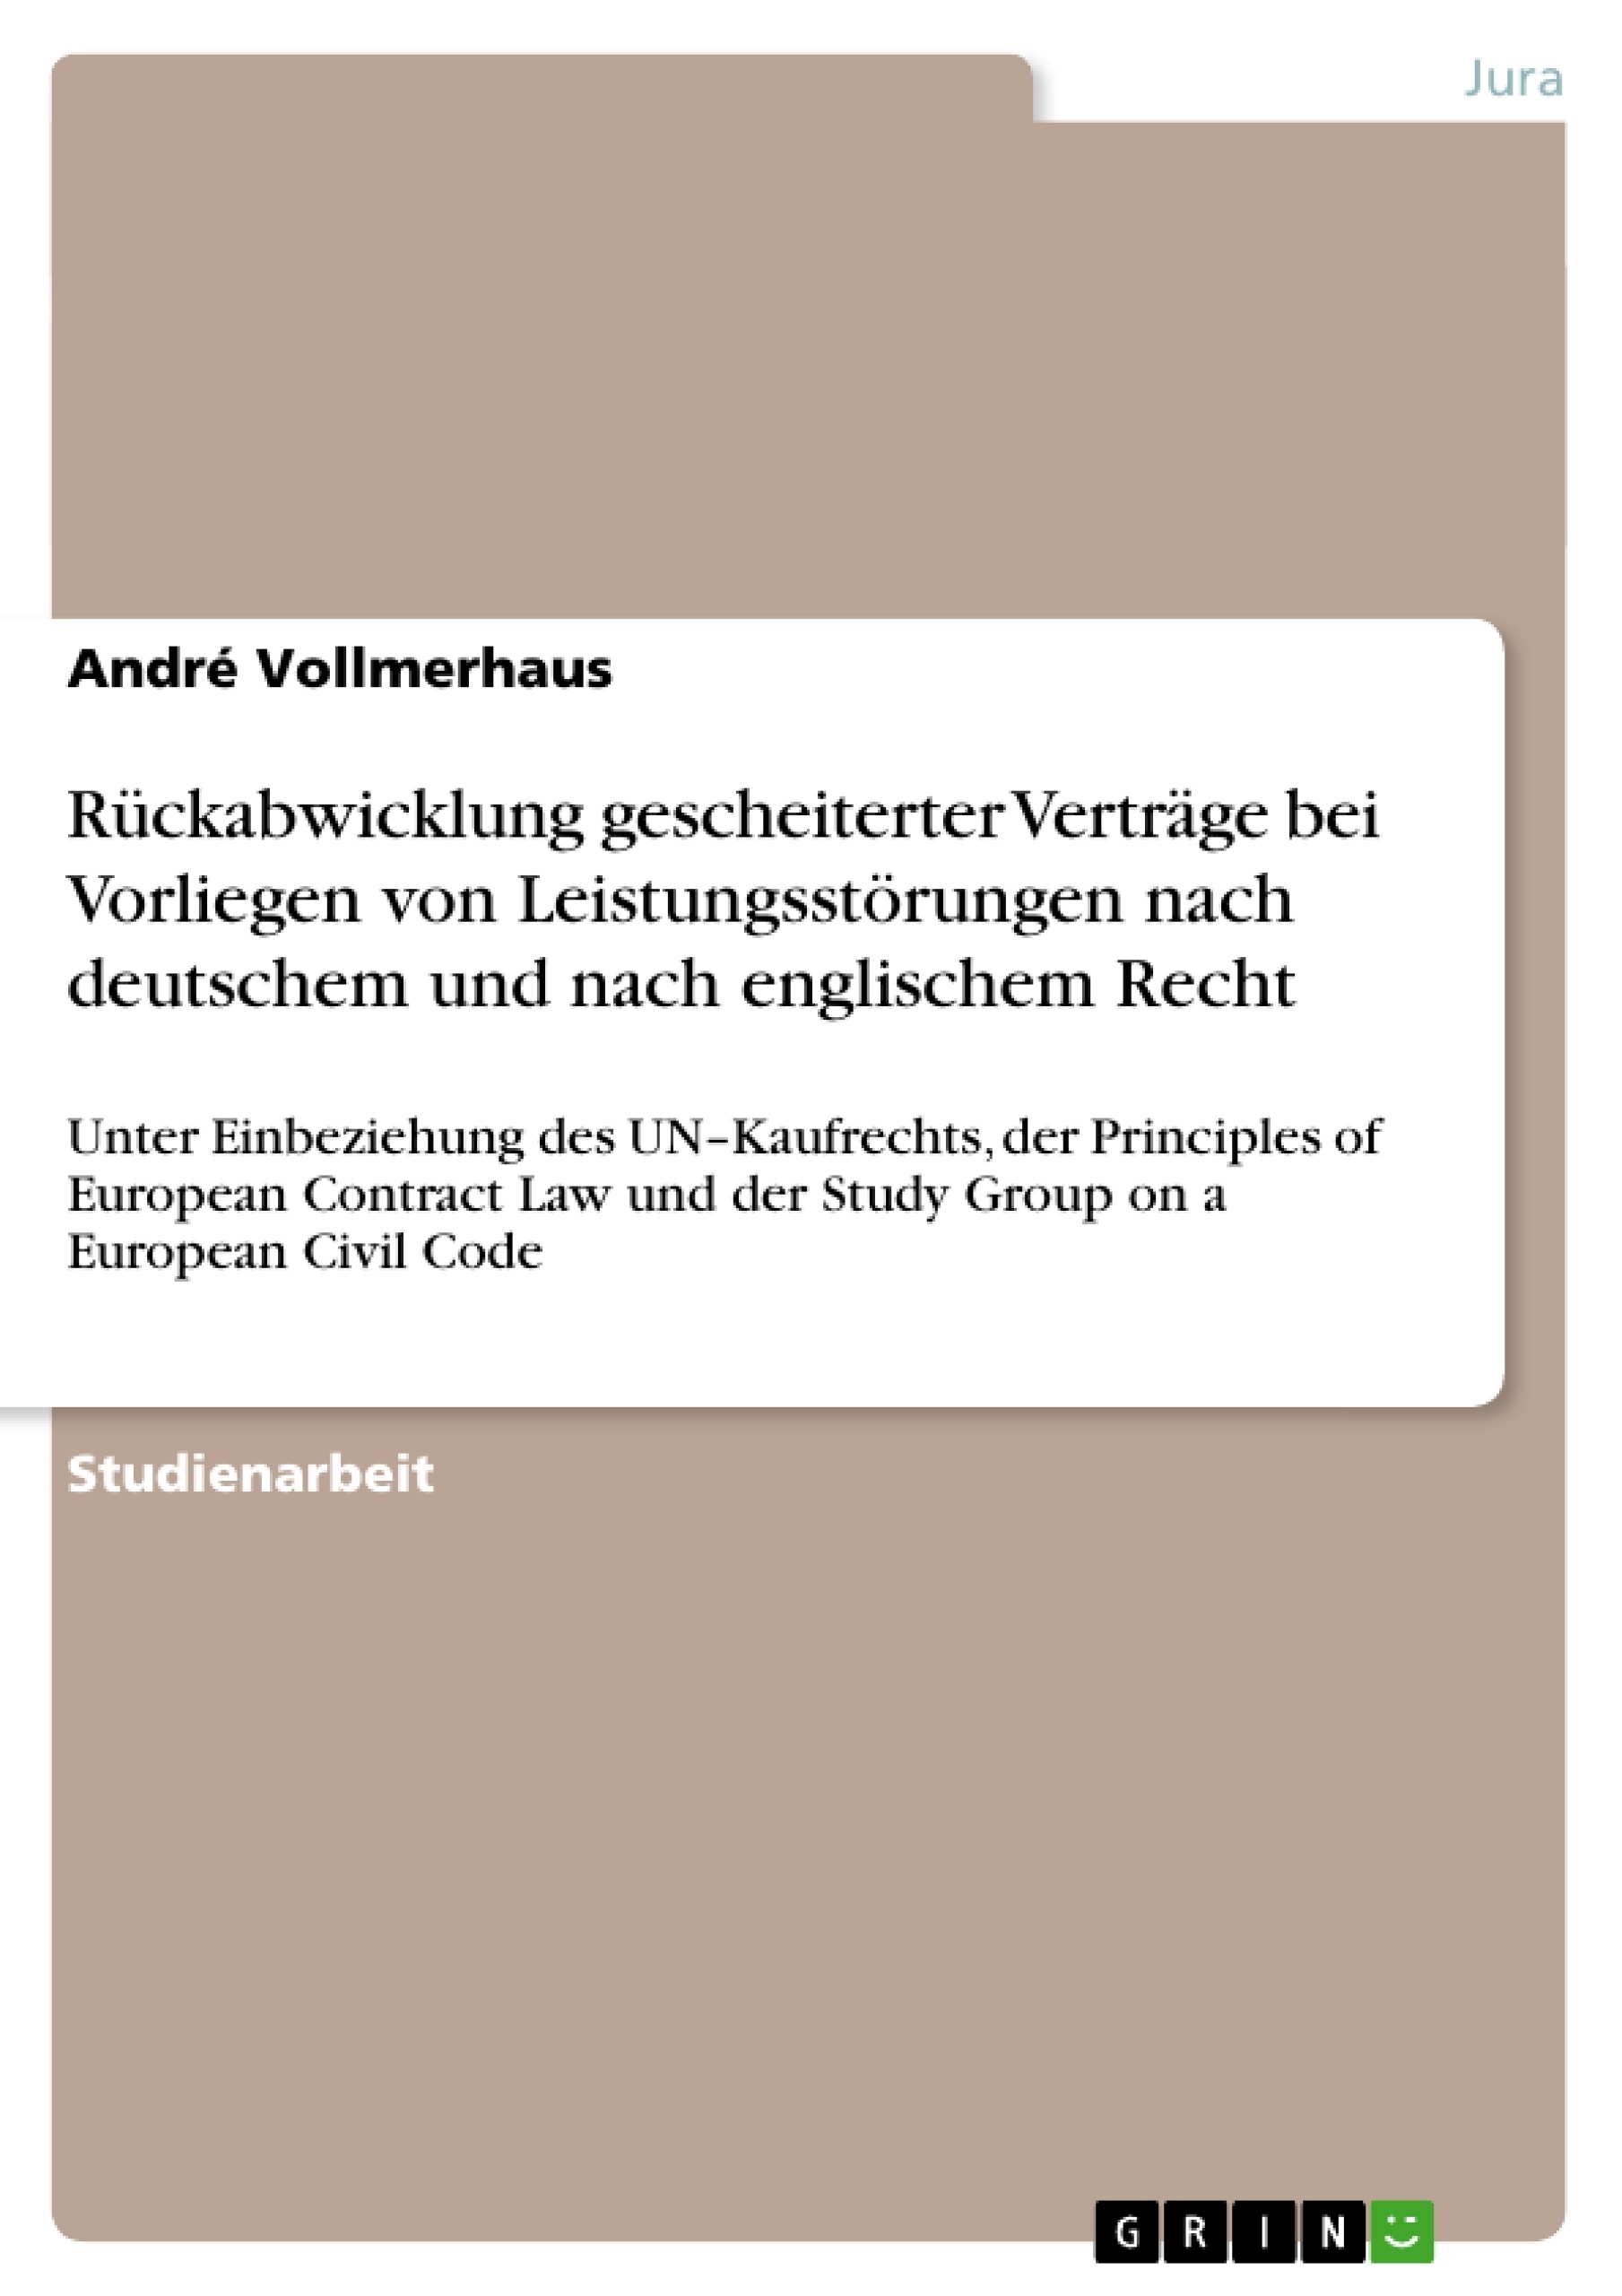 Título: Rückabwicklung gescheiterter Verträge bei Vorliegen von Leistungsstörungen nach deutschem und nach englischem Recht